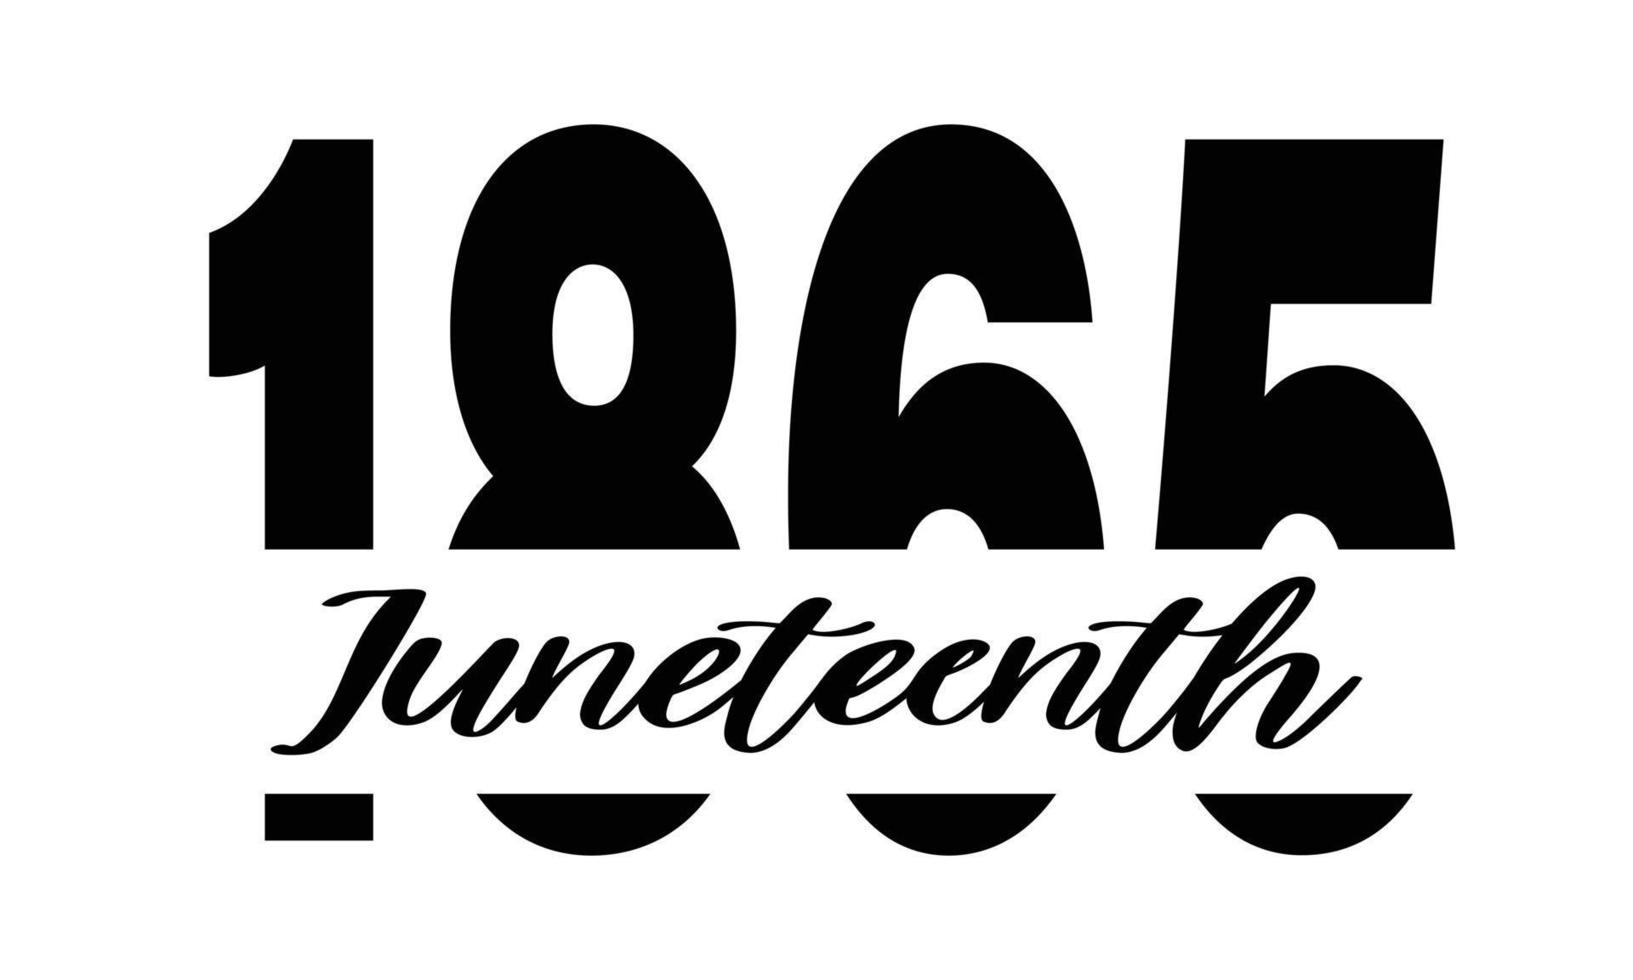 1865 juni - vector logo-ontwerp voor de viering van juni. zwart-wit typografie print geïsoleerd op een witte achtergrond